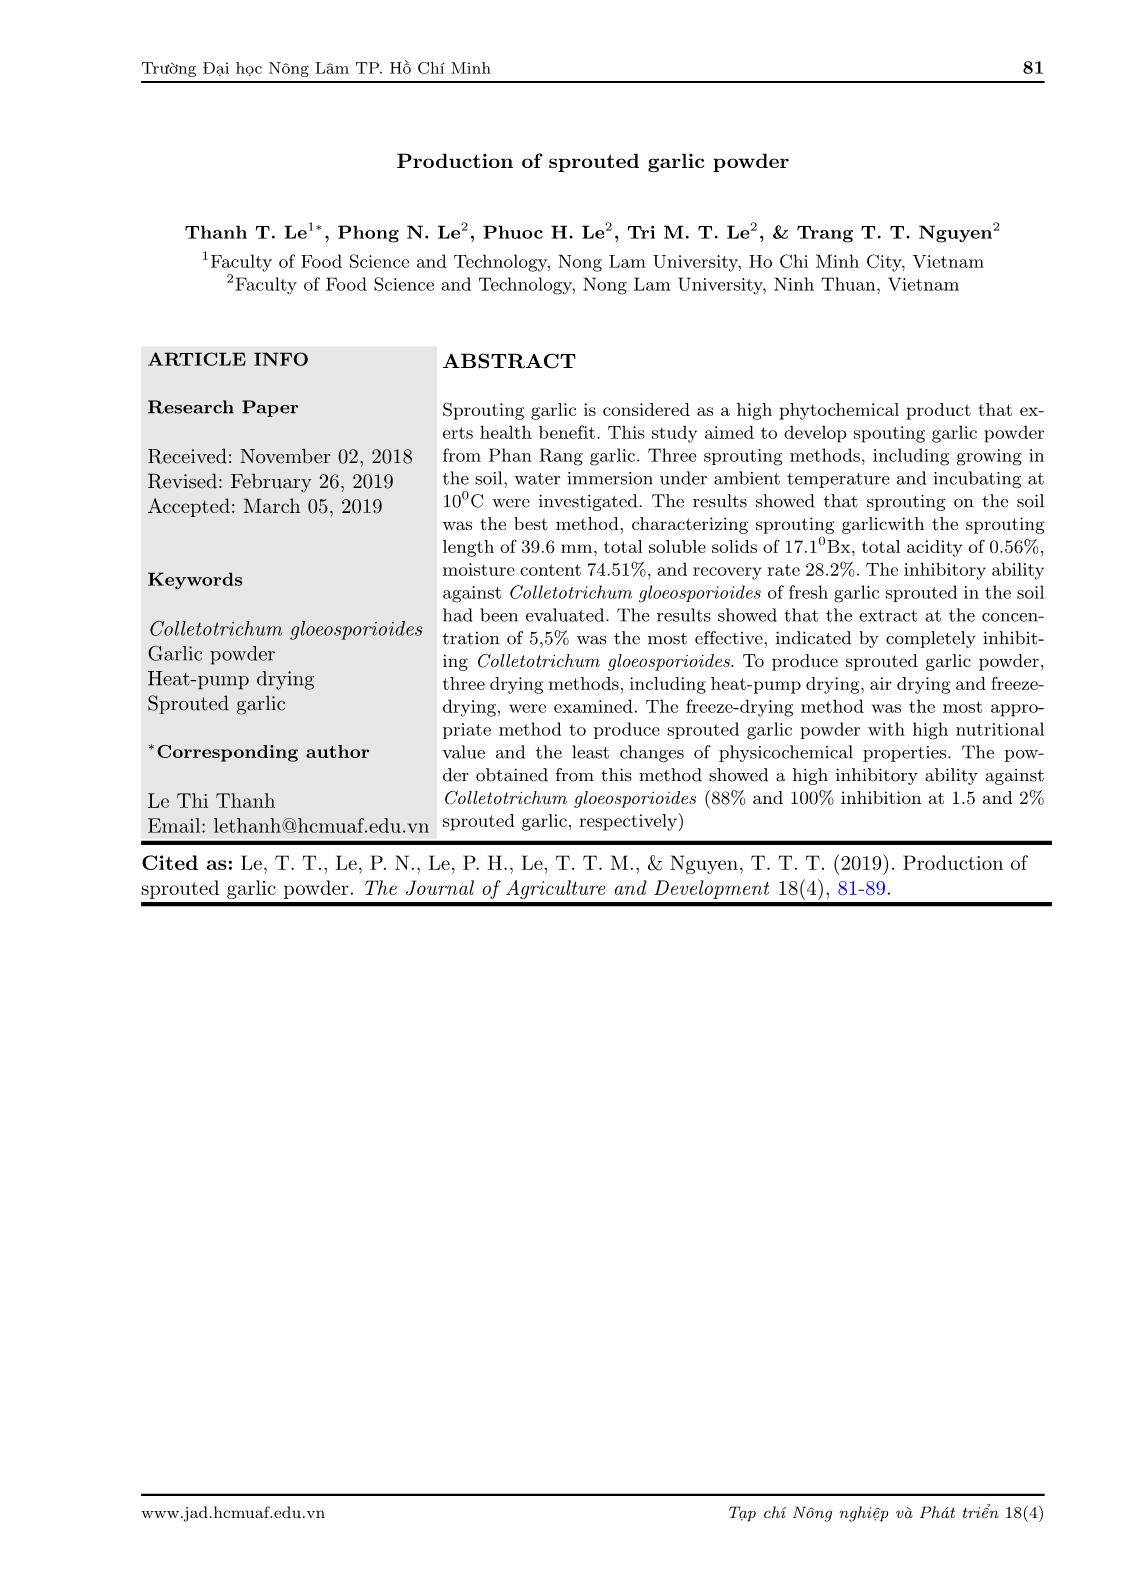 Nghiên cứu quy trình chế biến bột mầm tỏi từ tỏi Phan Rang trang 1